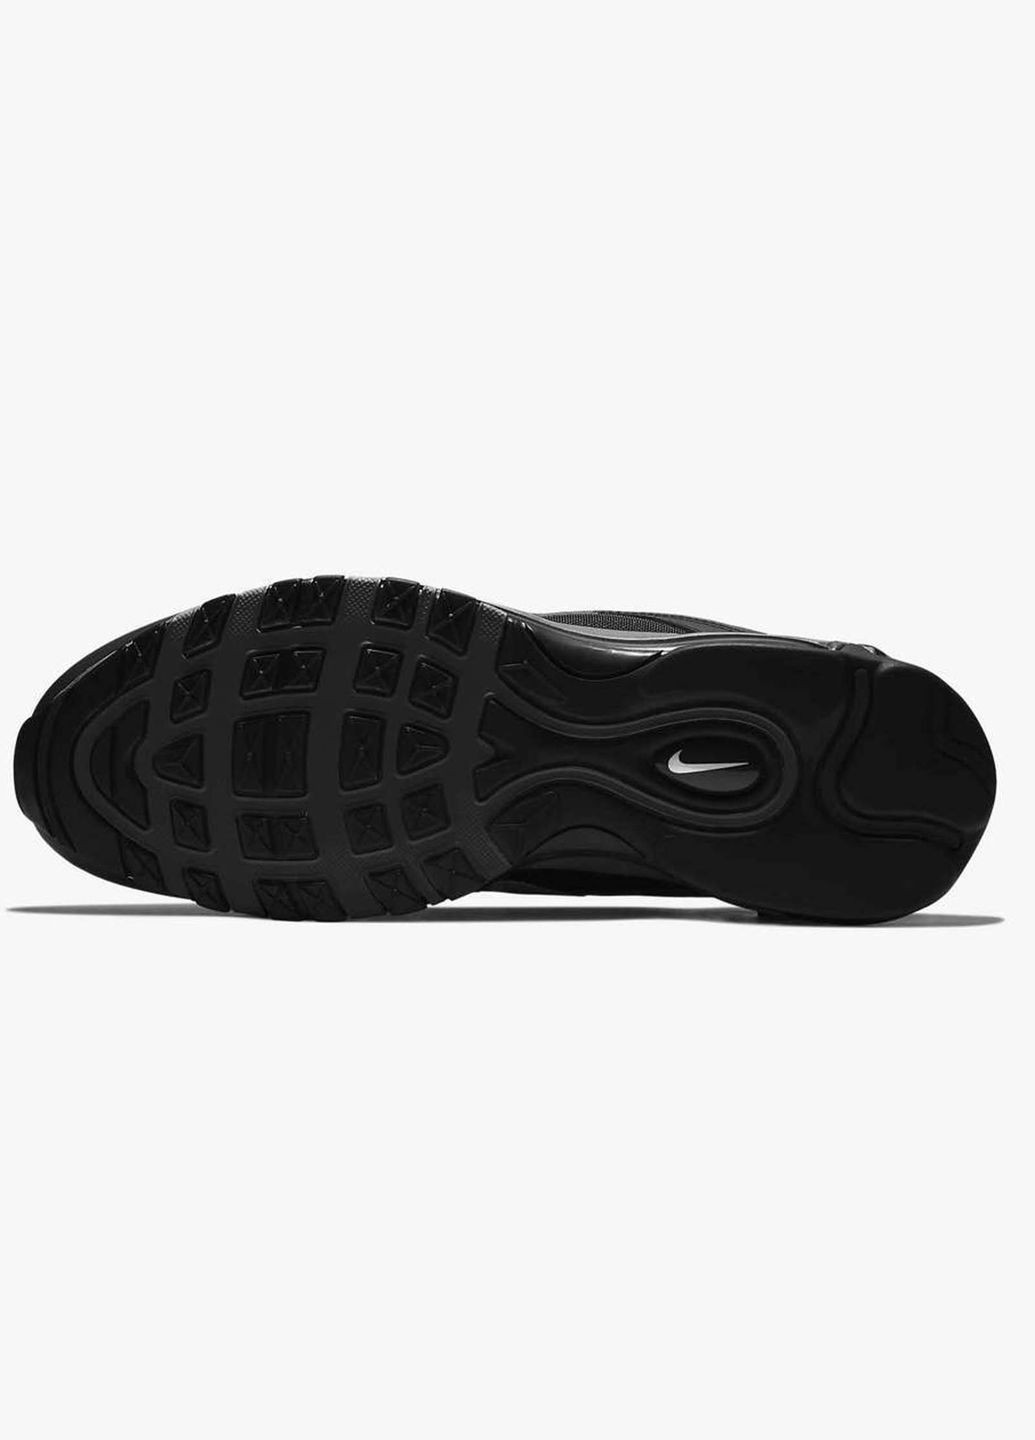 Черные всесезонные мужские кроссовки air max 97 bq4567-001 весна-осень текстиль кожа сетка черные Nike